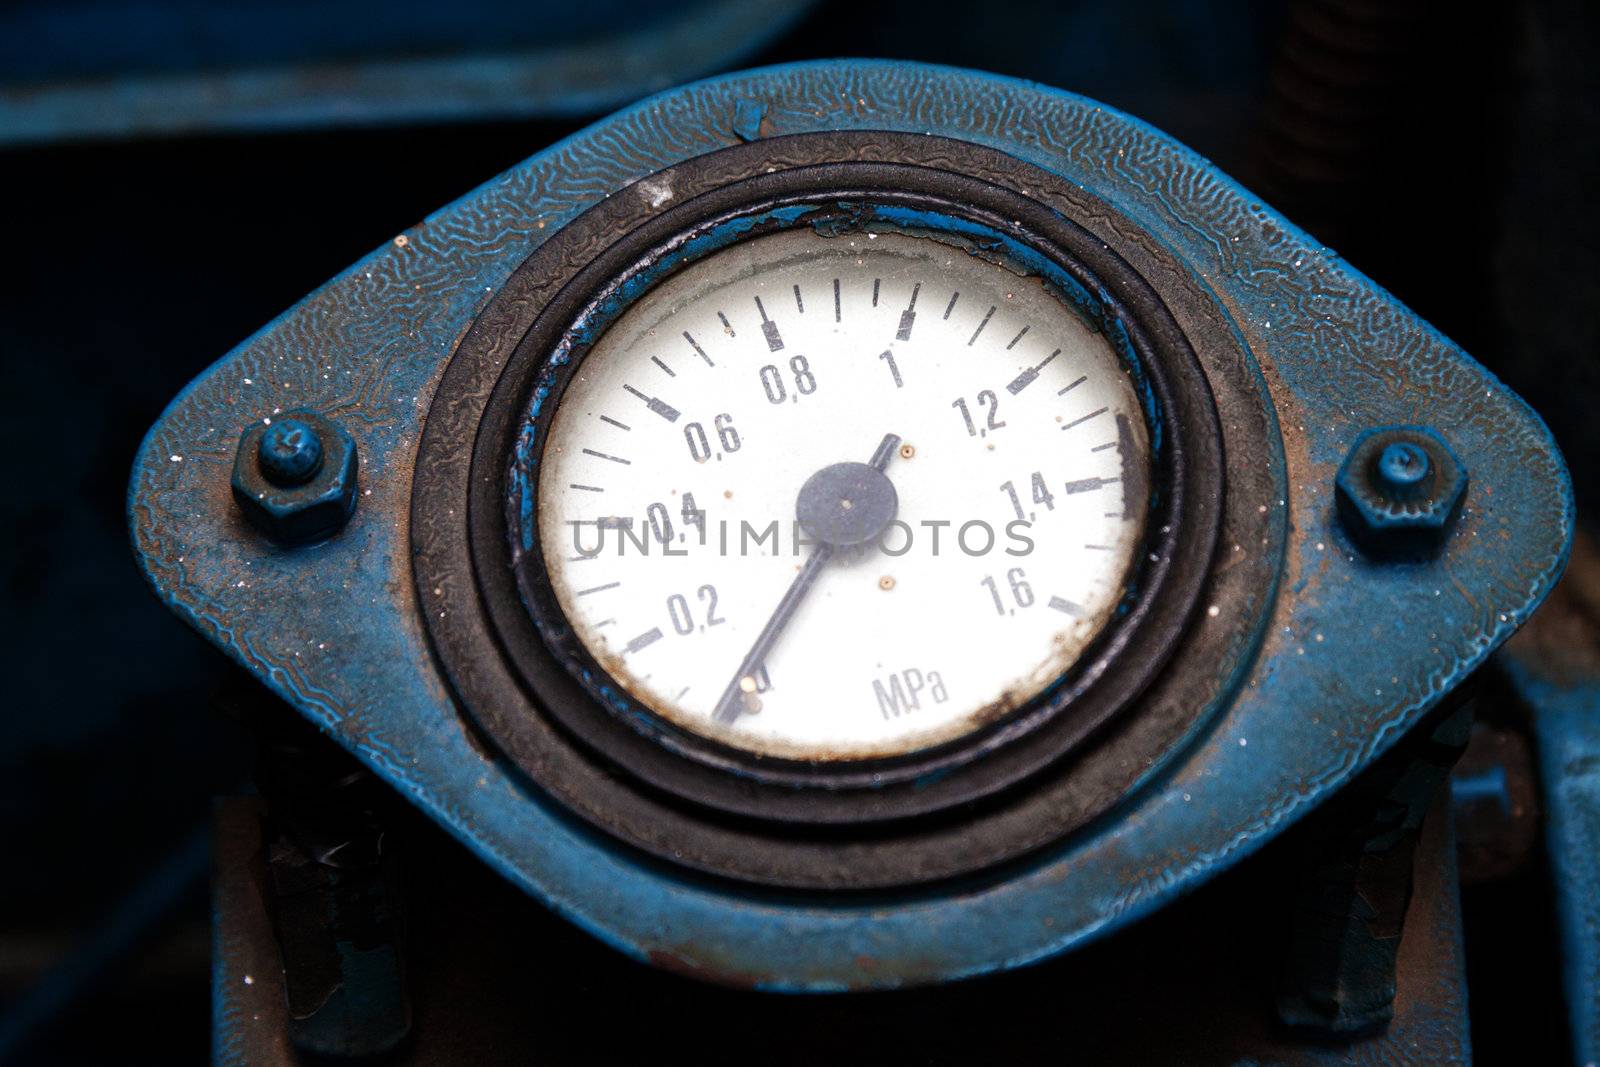 Old industrial pressure gauge by Lamarinx